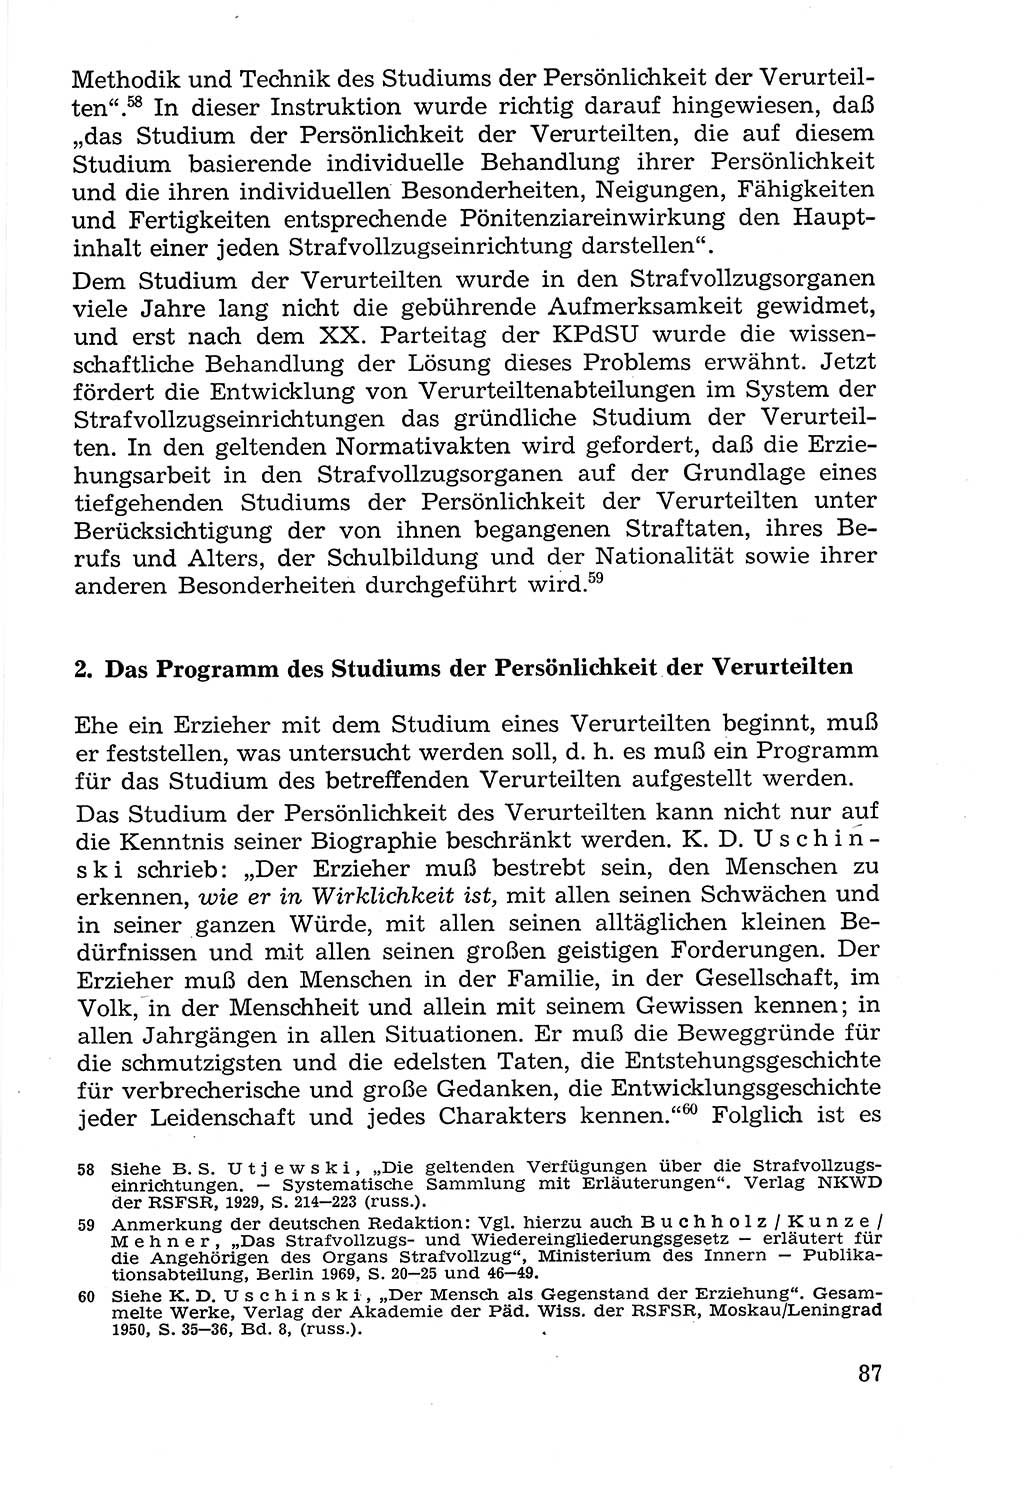 Lehrbuch der Strafvollzugspädagogik [Deutsche Demokratische Republik (DDR)] 1969, Seite 87 (Lb. SV-Pd. DDR 1969, S. 87)